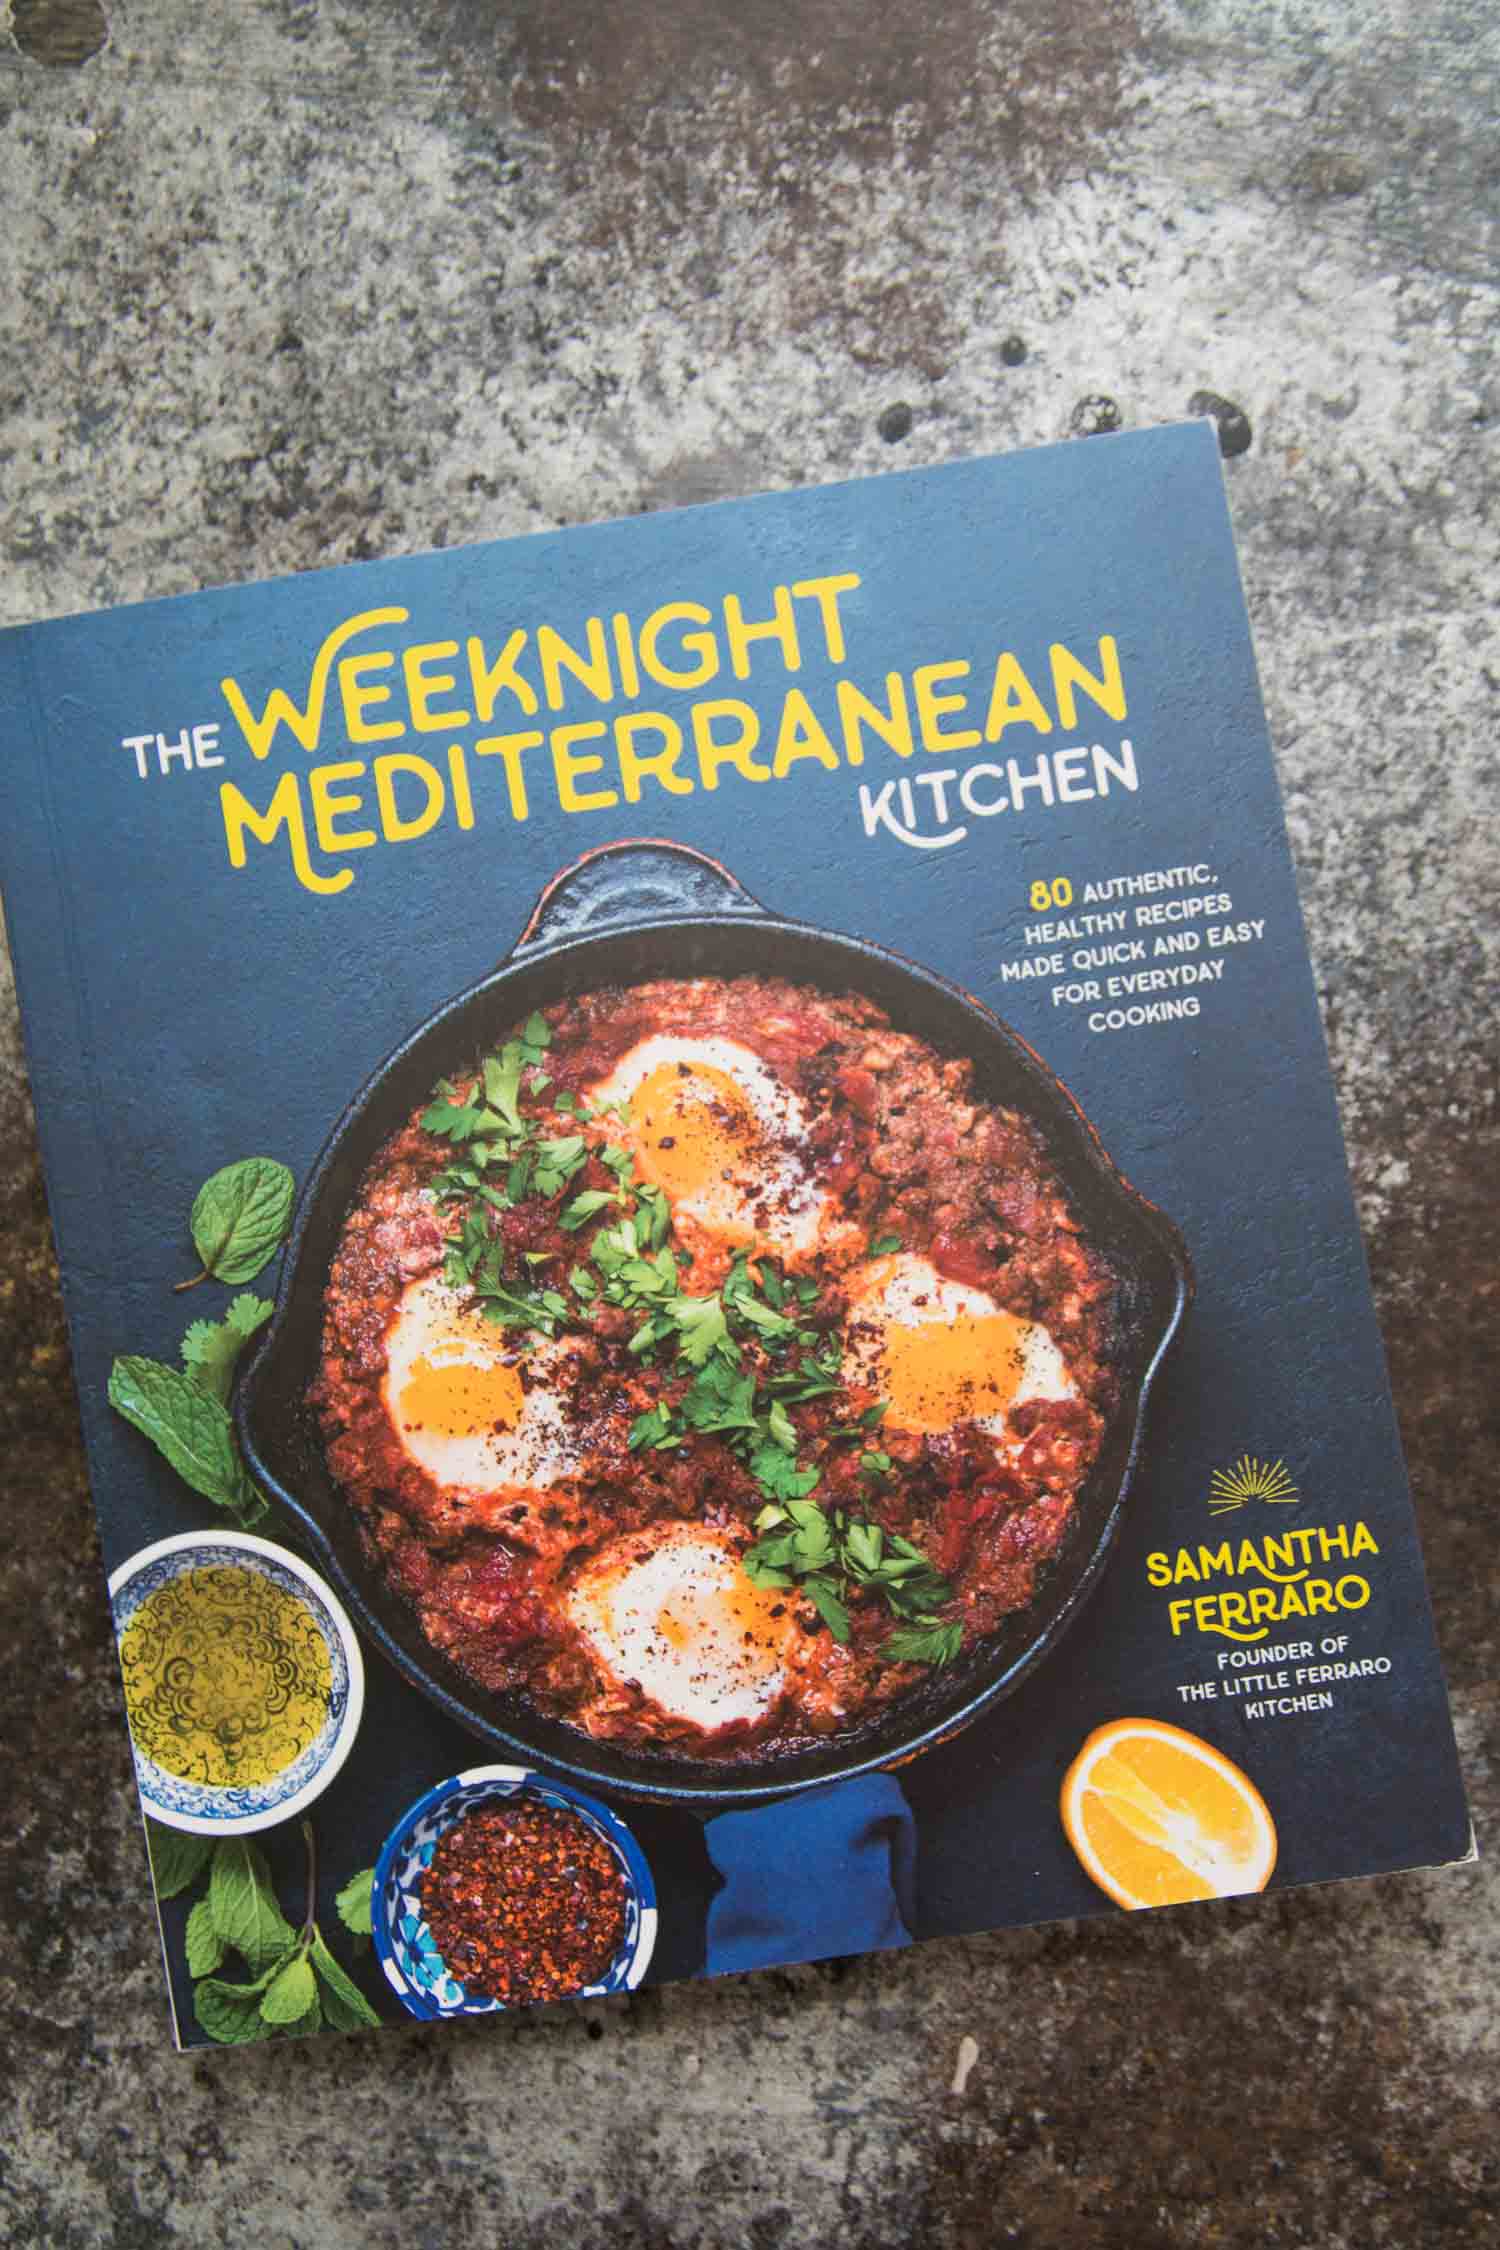 The Weeknight Mediterranean Kitchen by Samantha Ferraro